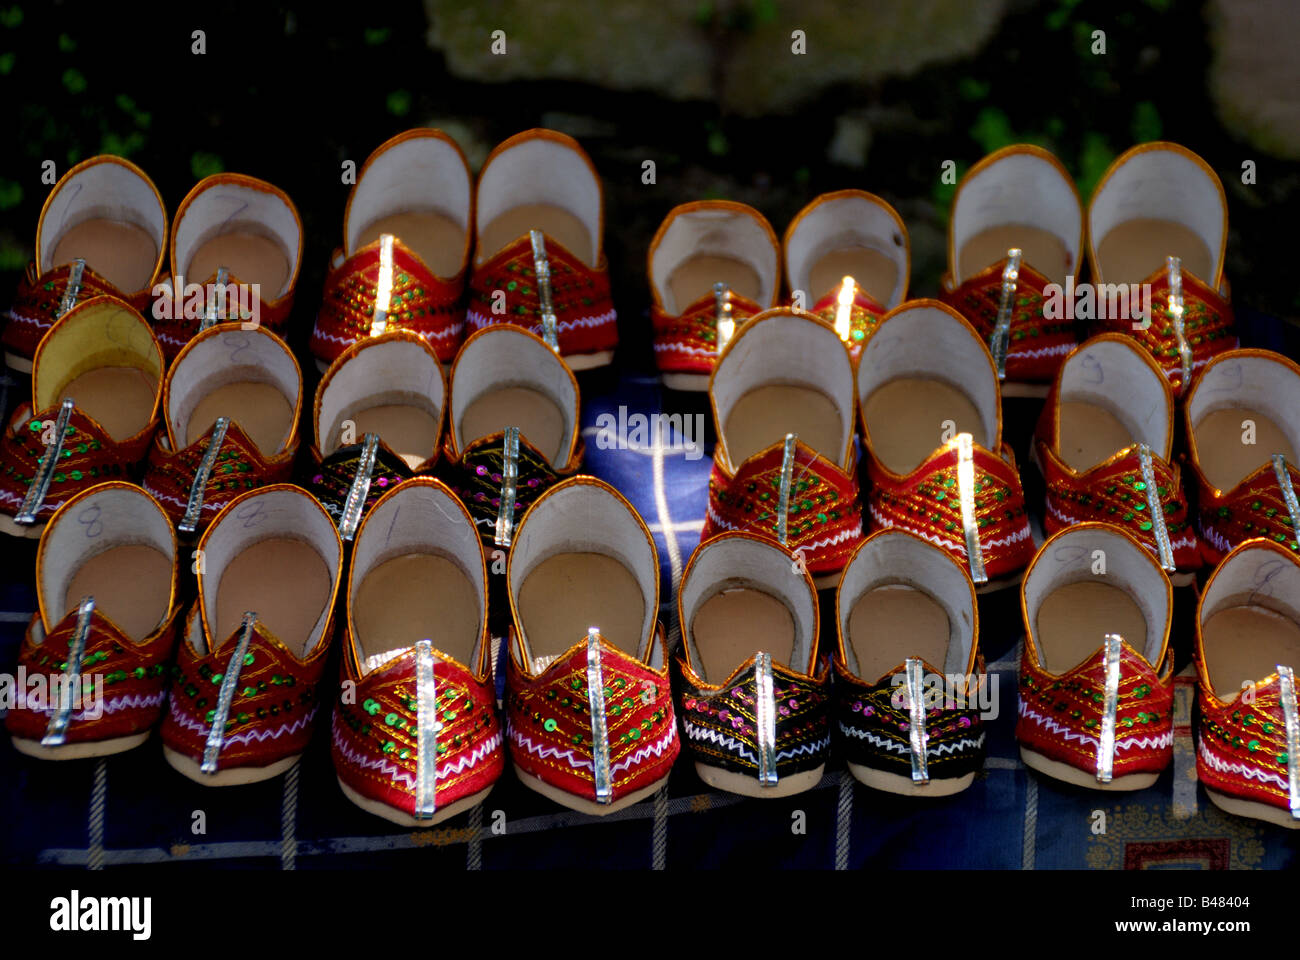 La tradizione scarpe.Scarpe,Souvenir,Rishikesh,l'India,Ais Foto Stock